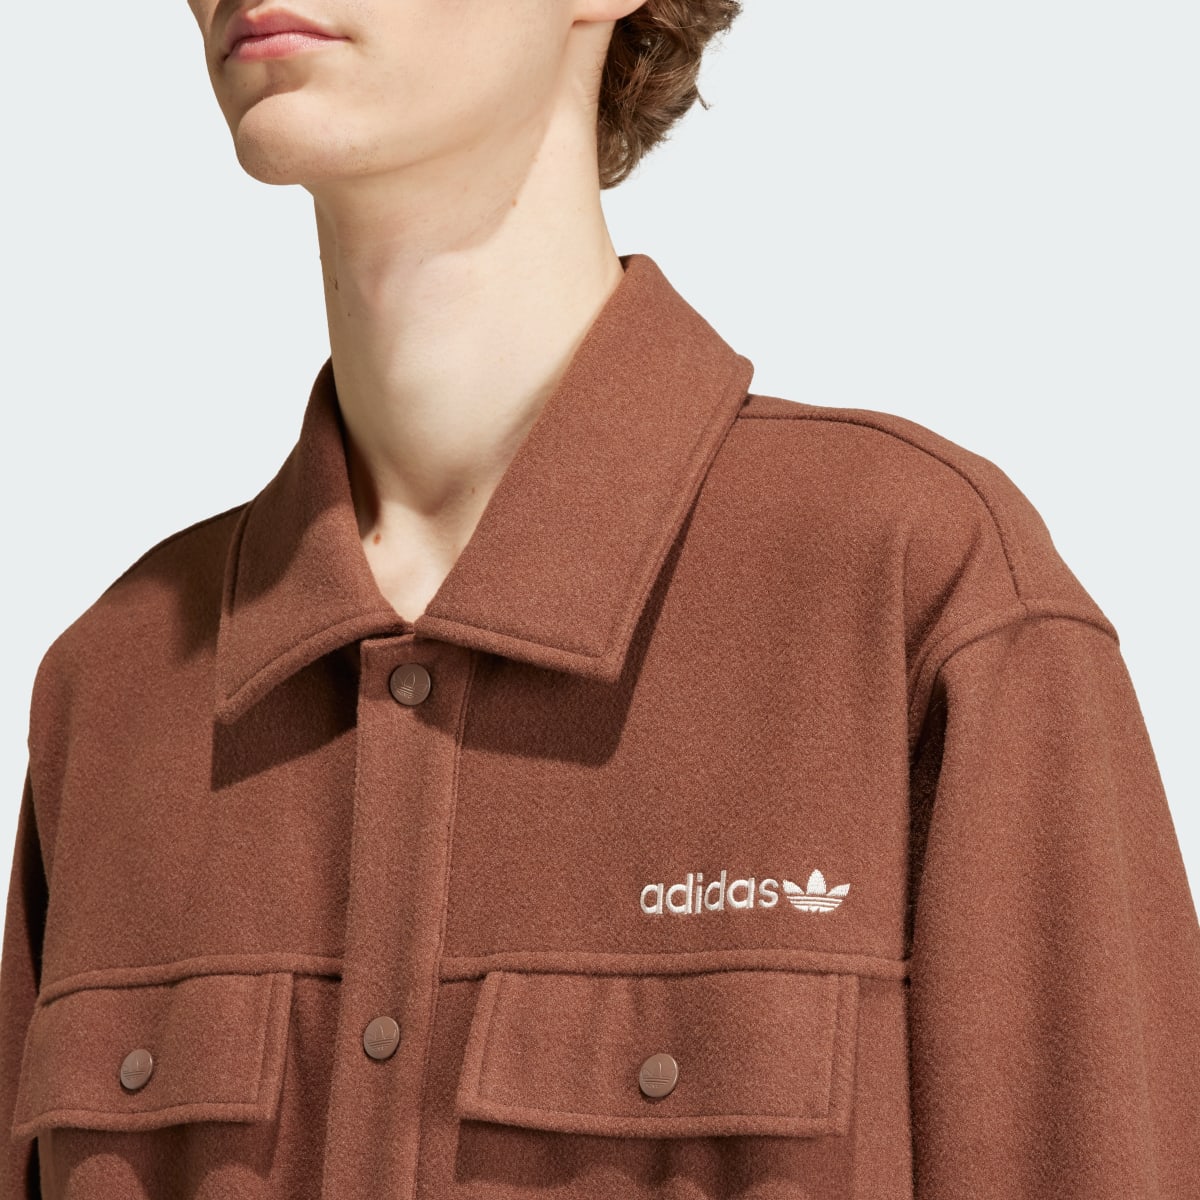 Adidas Premium Overshirt. 7